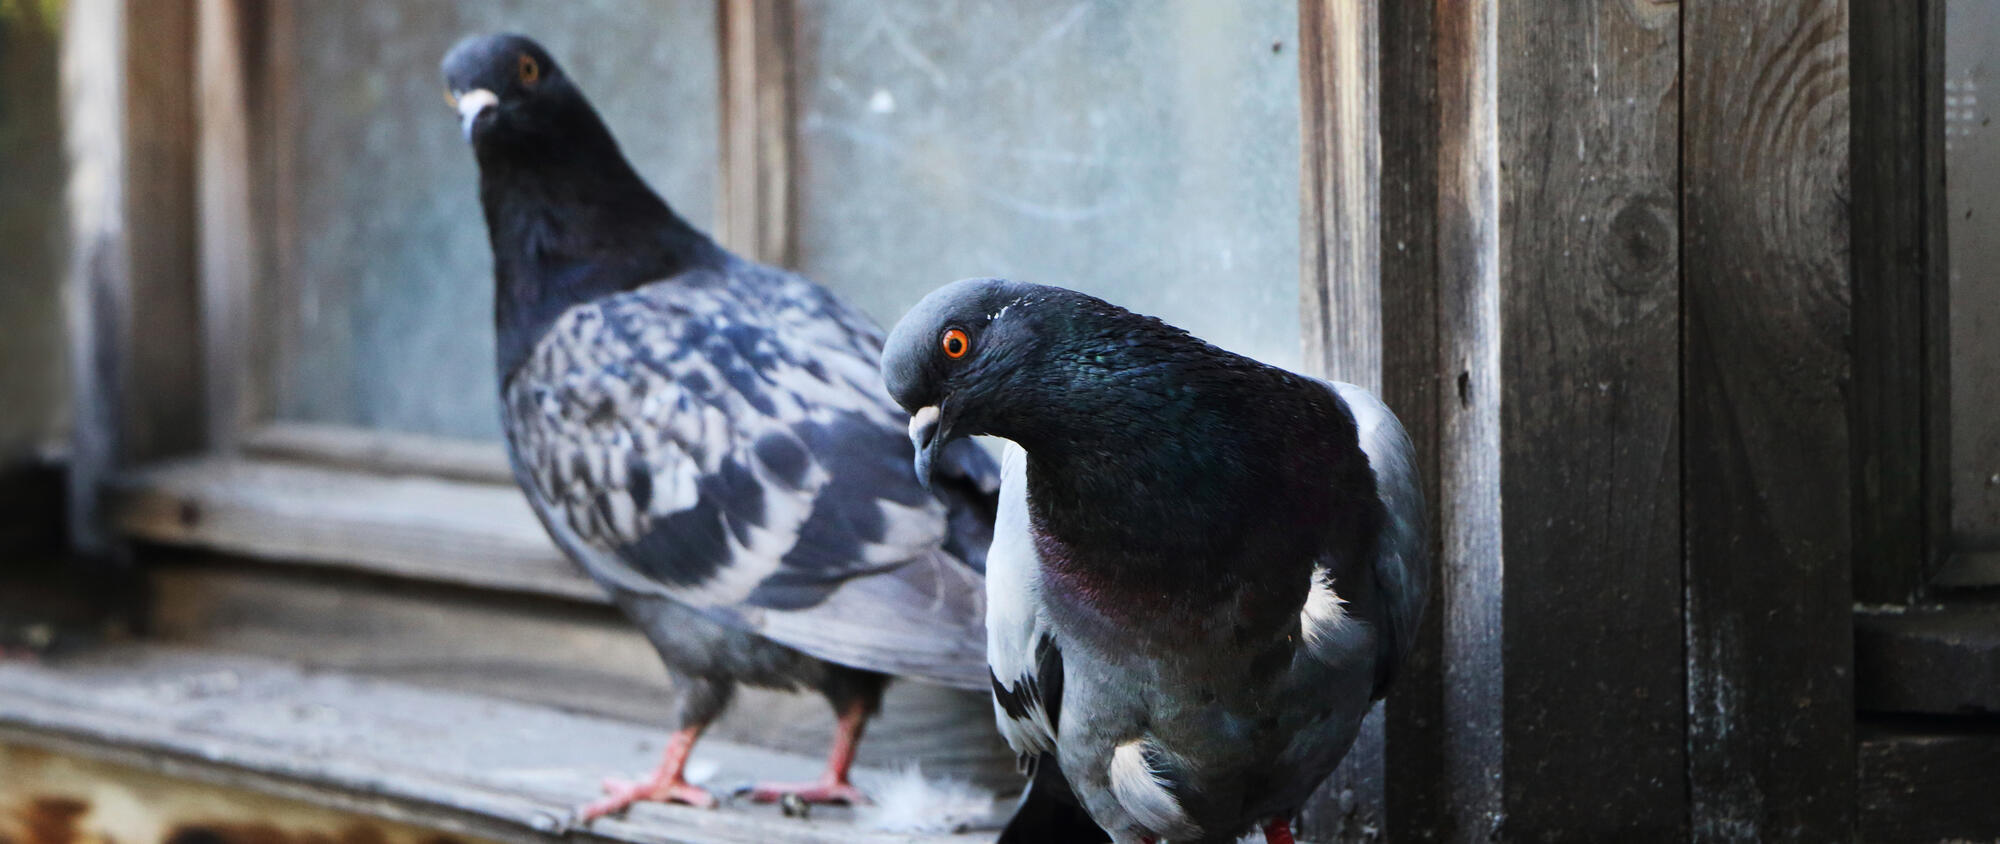 Come allontanare i piccioni dal terrazzo con metodi naturali